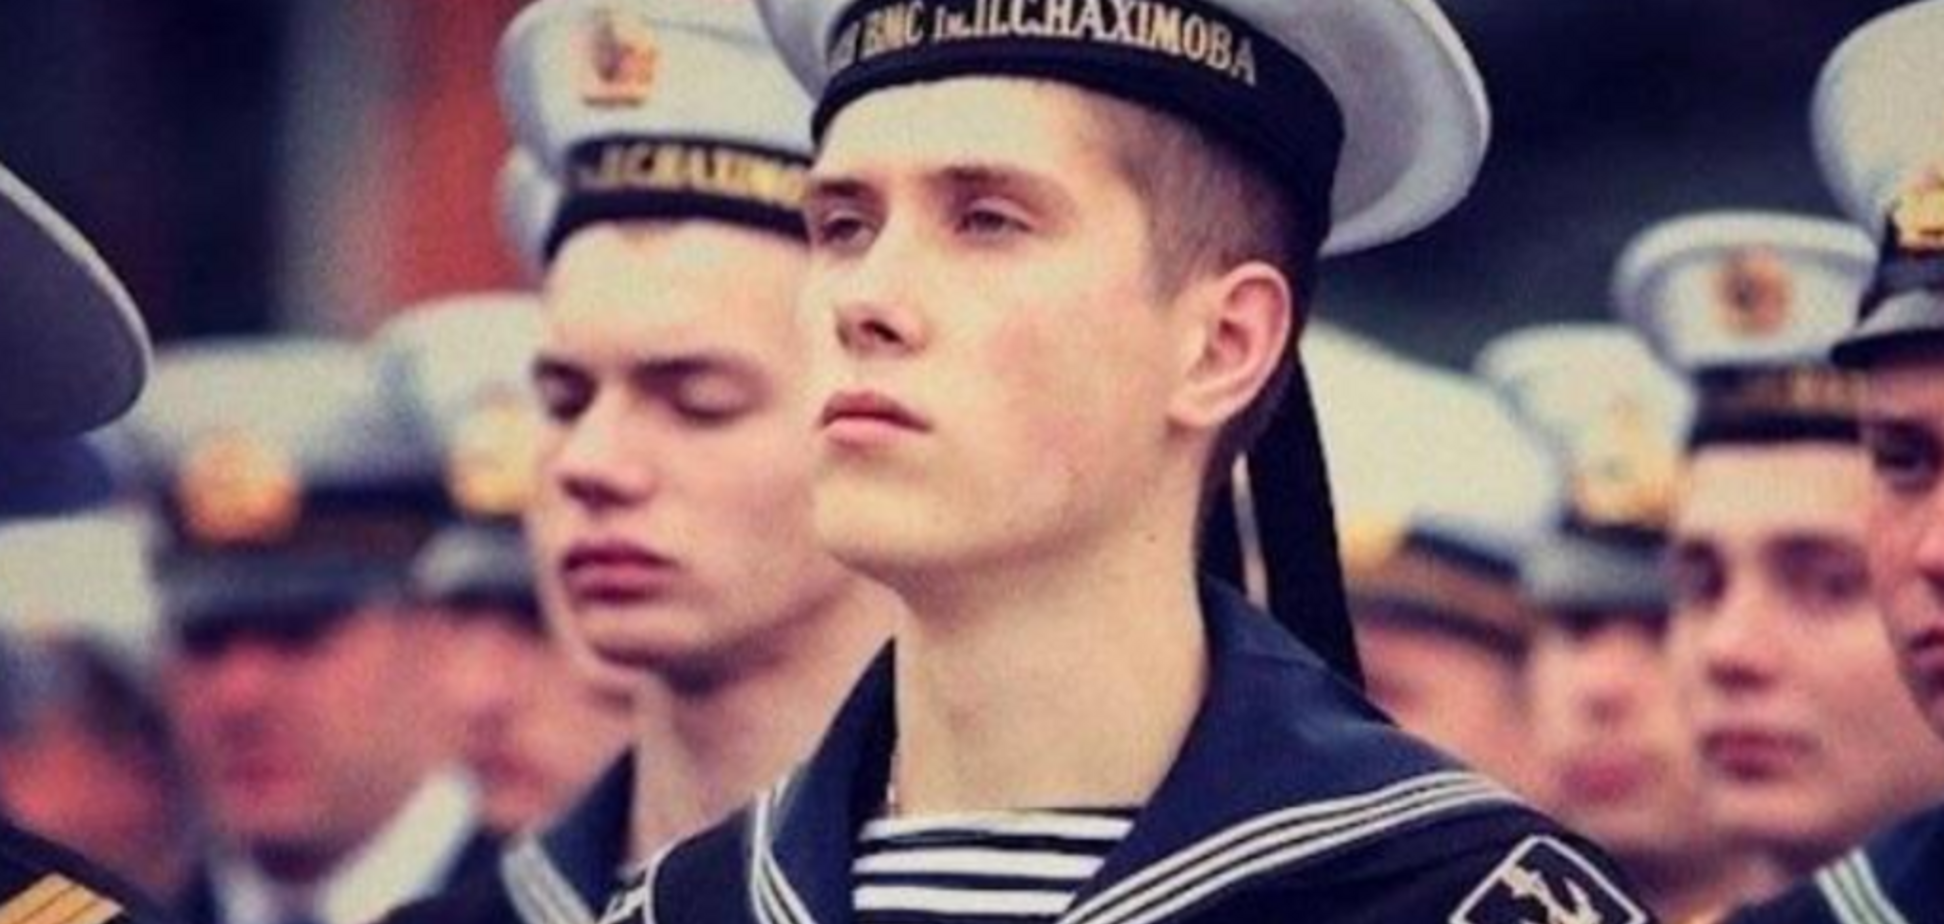 Мечтал стать морским офицером: появились данные о еще одном матросе ВМС, захваченном Россией